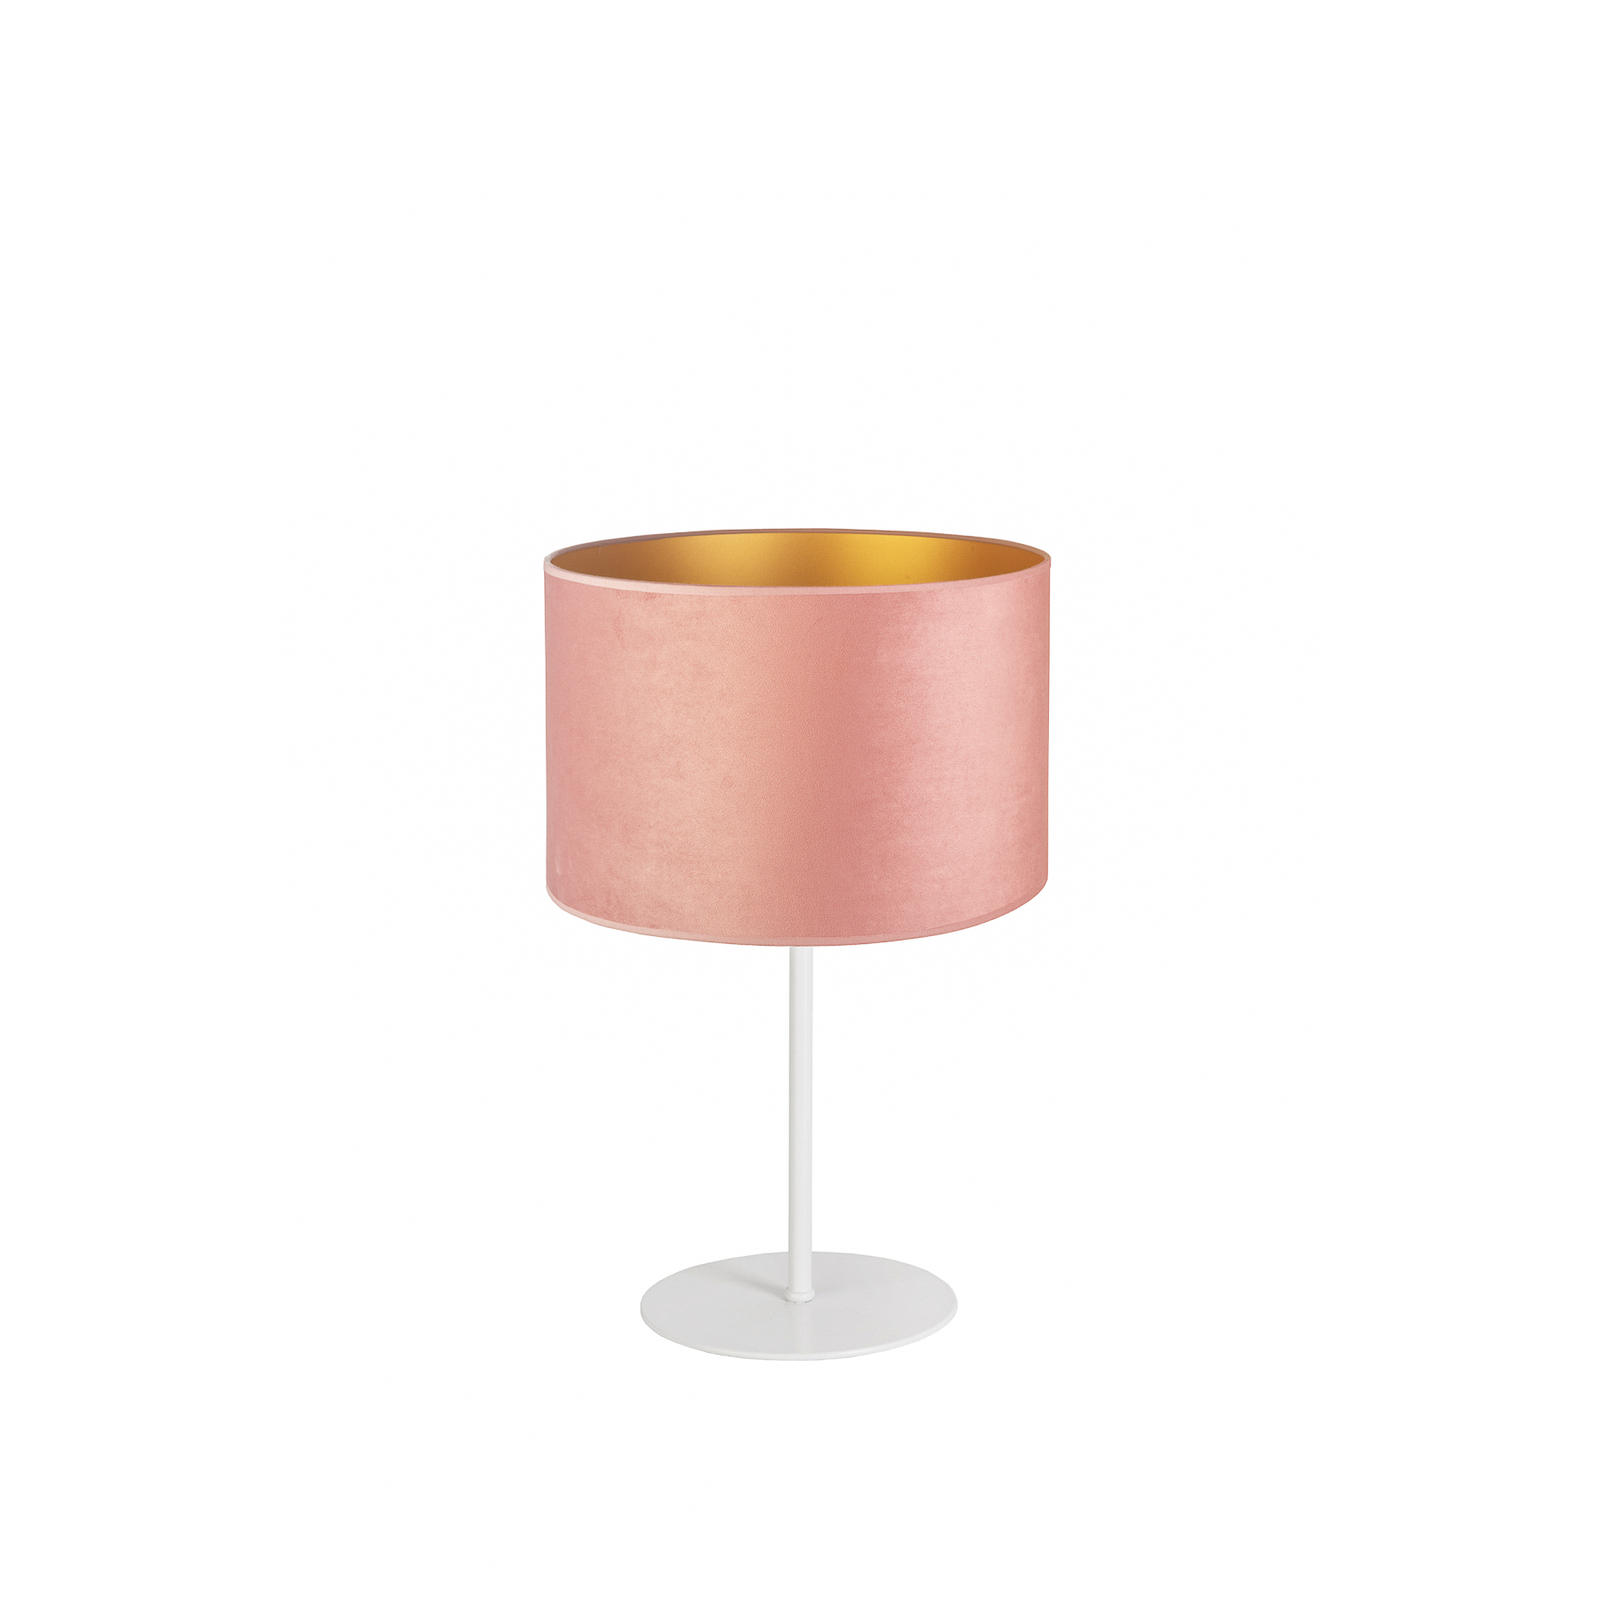 Candeeiro de mesa Golden Roller altura 30cm rosa claro/dourado